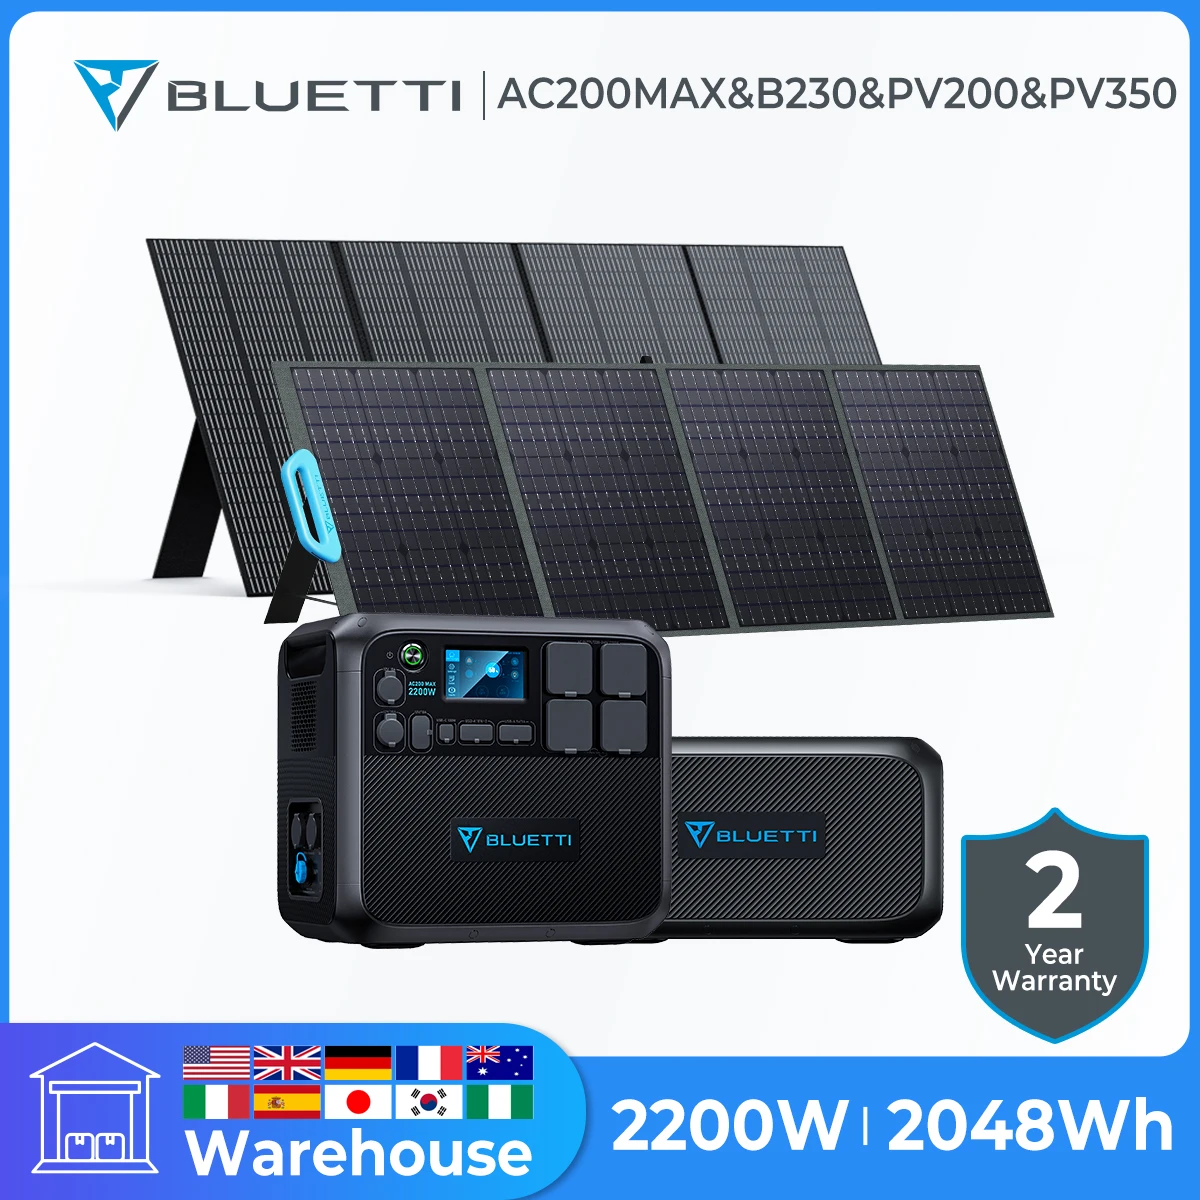 BLUETTI AC200MAX 2048wh 2200W Maroktelefon áram Bekvártélyoz B230 Fejlődésnek indul lifepo4 Üteg PV200 PV350 napelemes Ablaktábla napelemes generátor